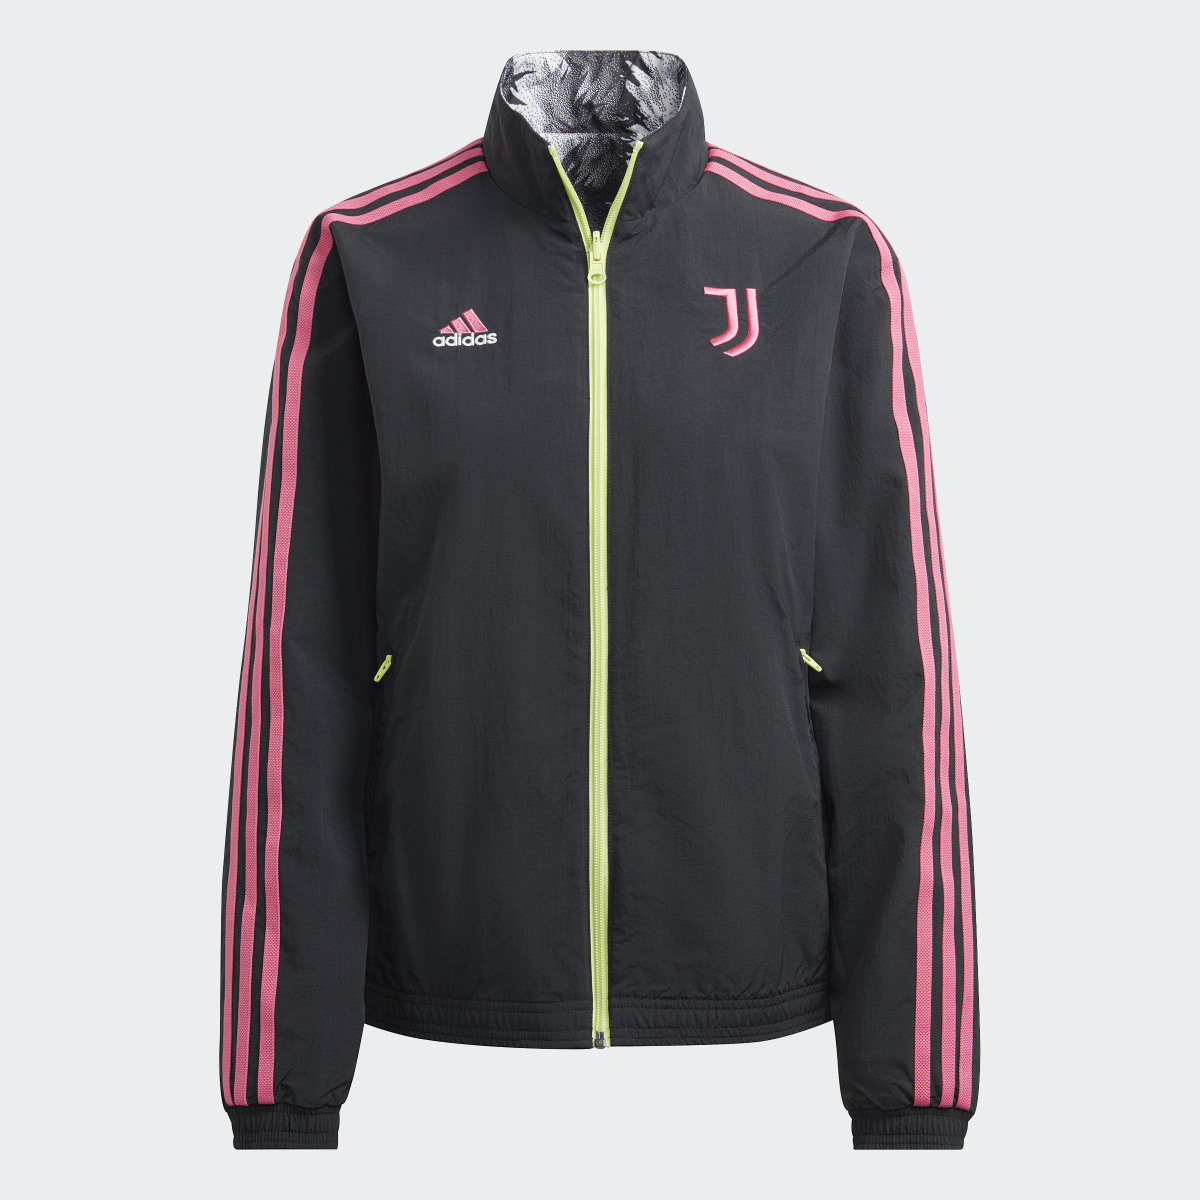 Adidas Giacca Anthem Juventus. 7